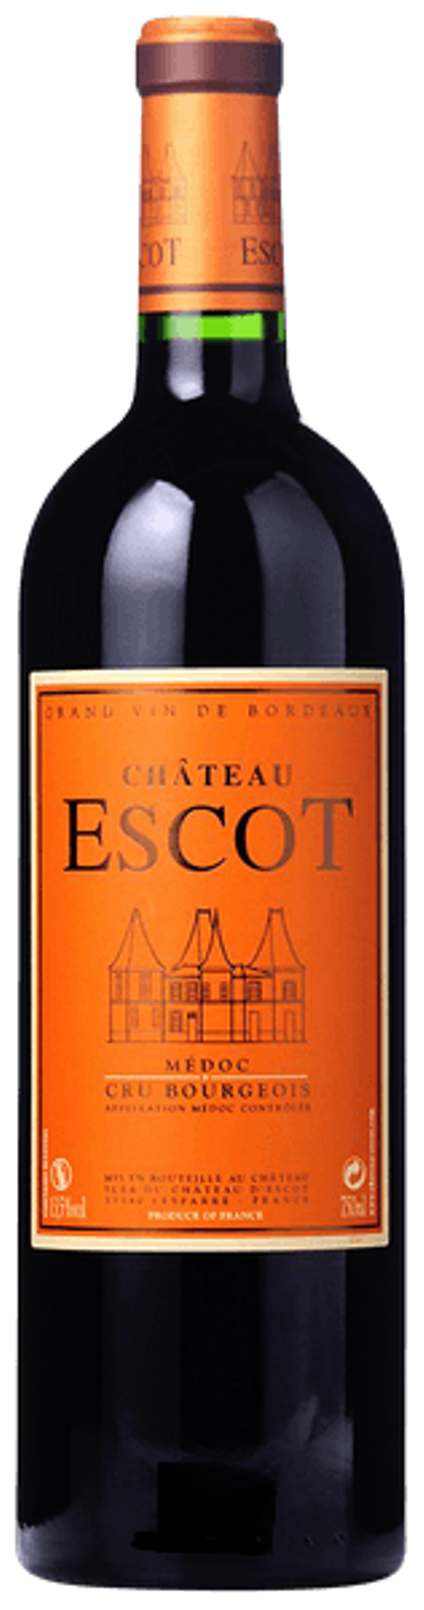 Chateau Escot AOC 2017, 1,5l Magnum, Medoc